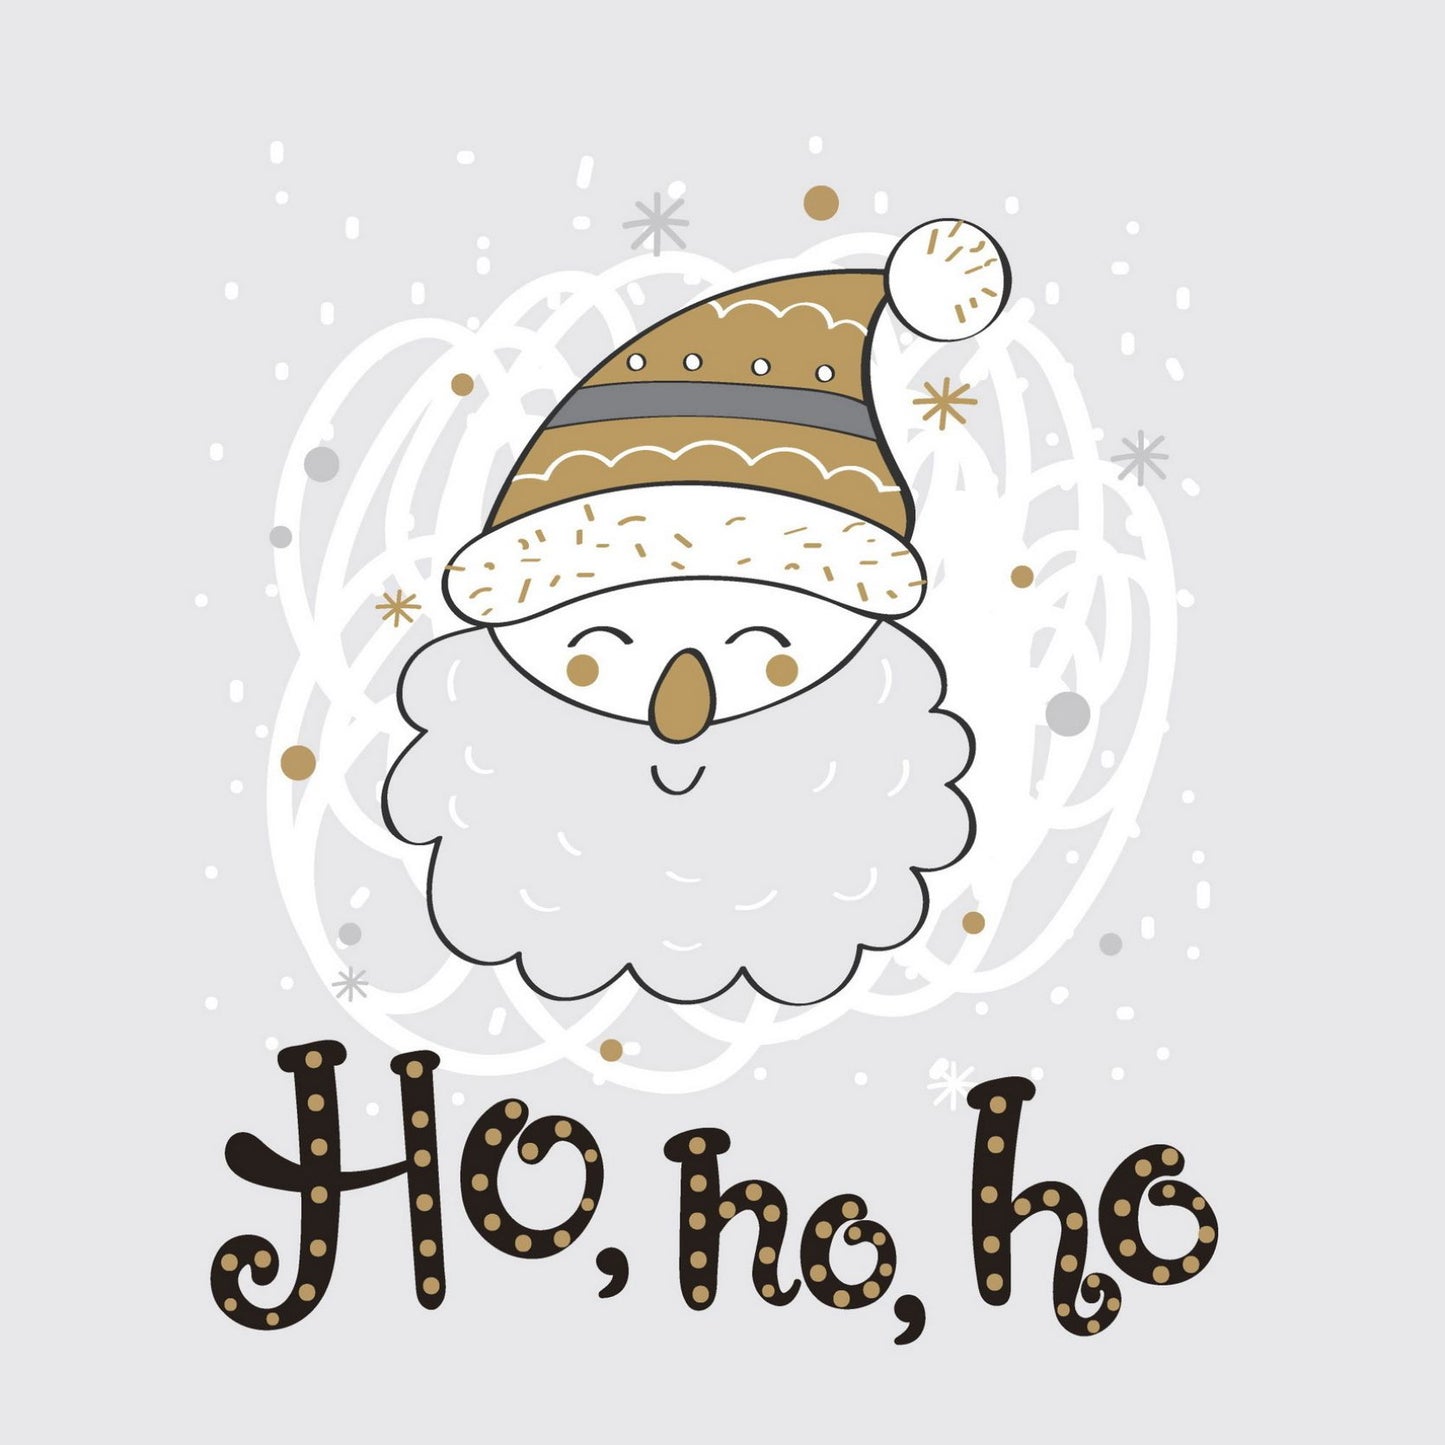 Søte julekort i håndtegnet cartoon. 10 pk. Fargemyanser i grå, sort, hvit og gull. motiv av en blid julenisse. Tekst på kort "ho, ho, ho"